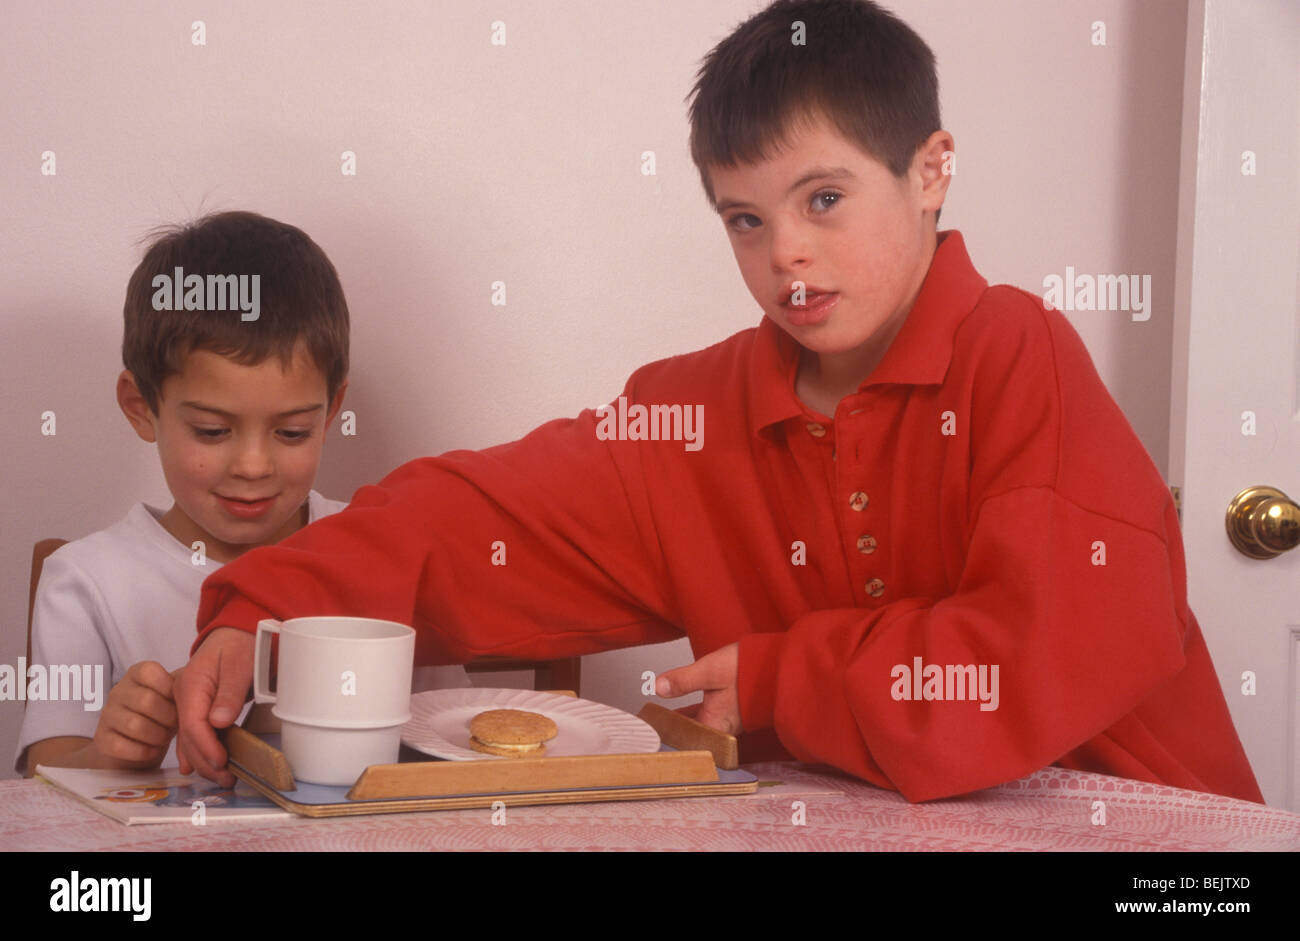 kleiner Junge mit Down-Syndrom geben Tee an einen Freund Stockfoto